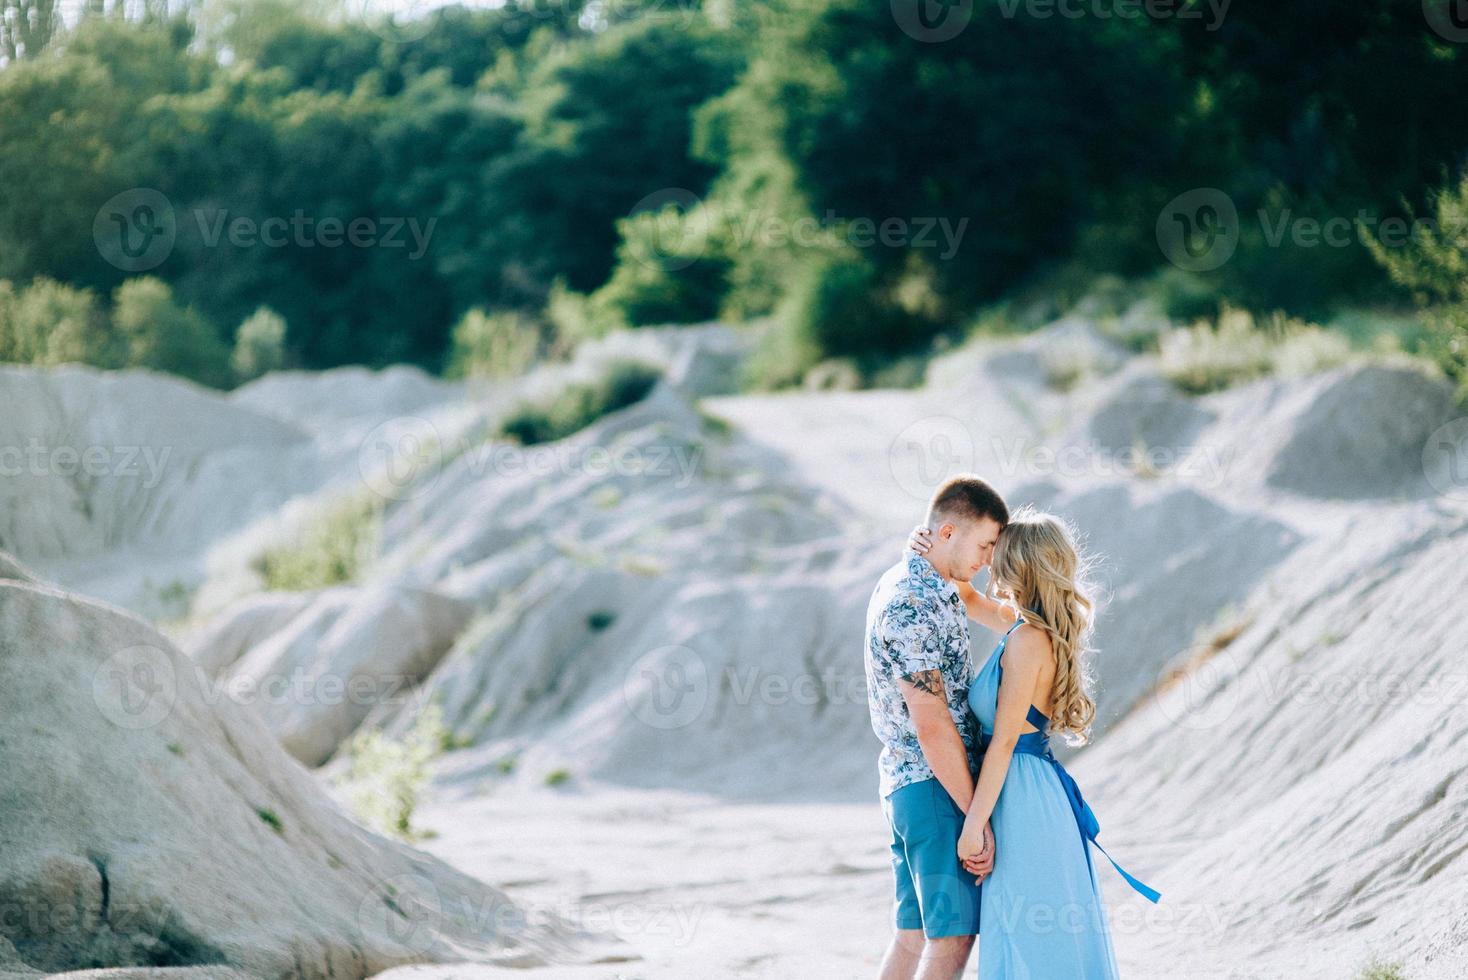 garota loira com um vestido azul claro e um cara com uma camisa leve em uma pedreira de granito foto